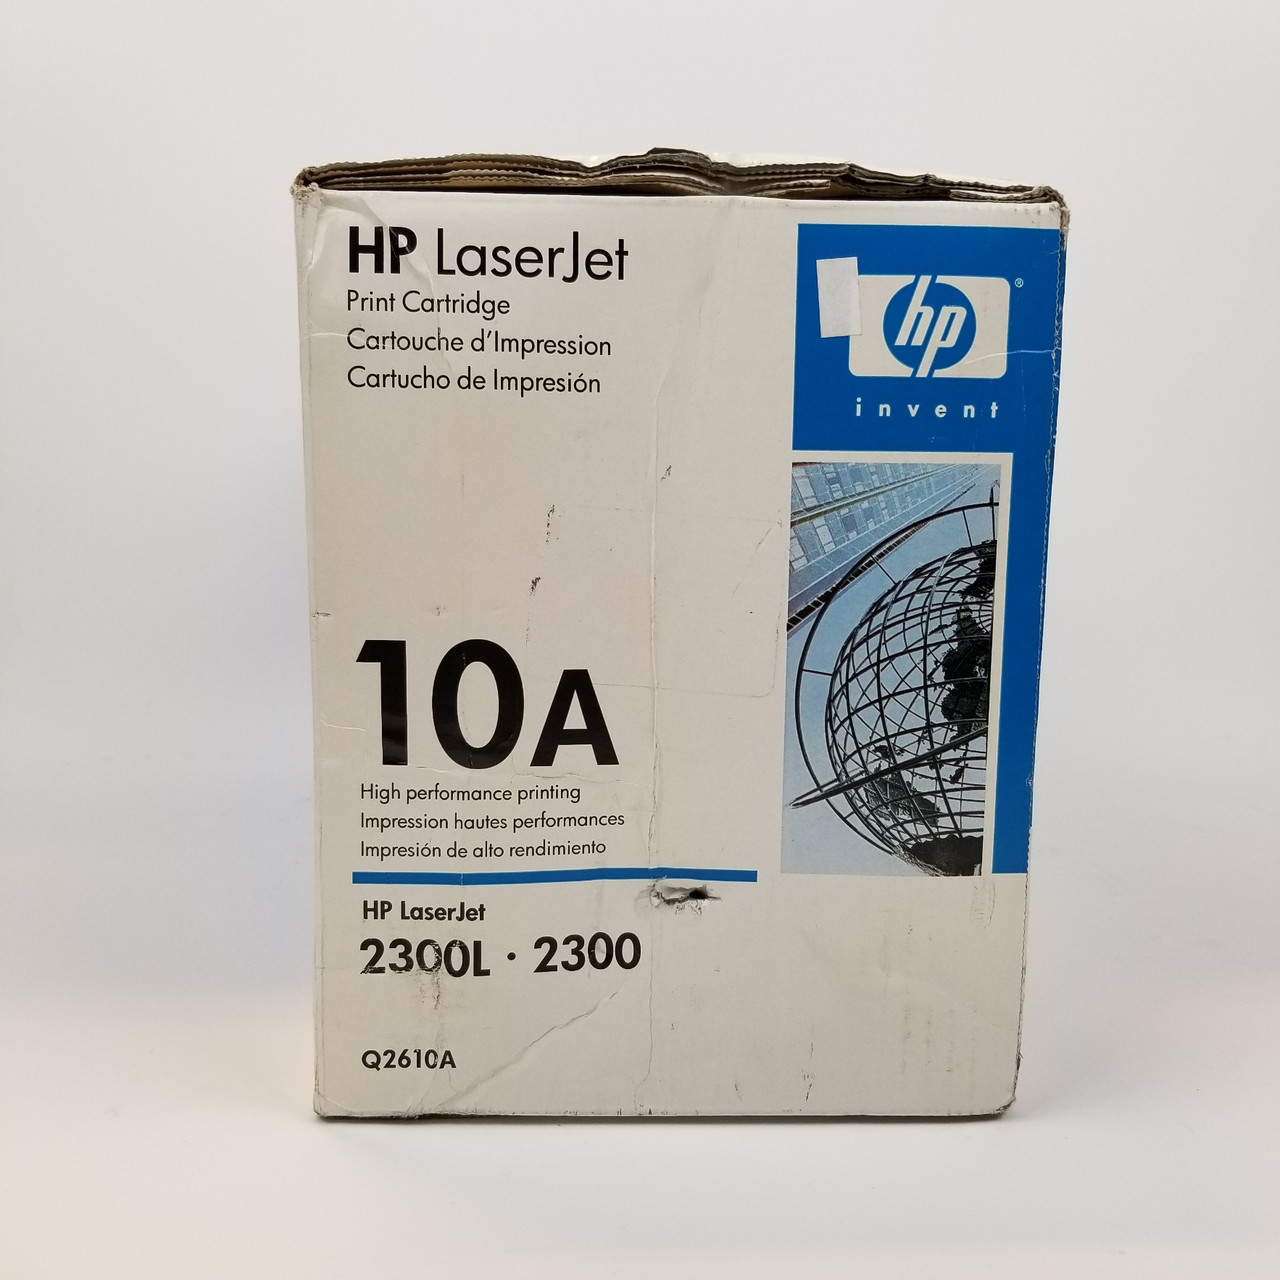 HP Laserjet 10A Toner Black | Grade A